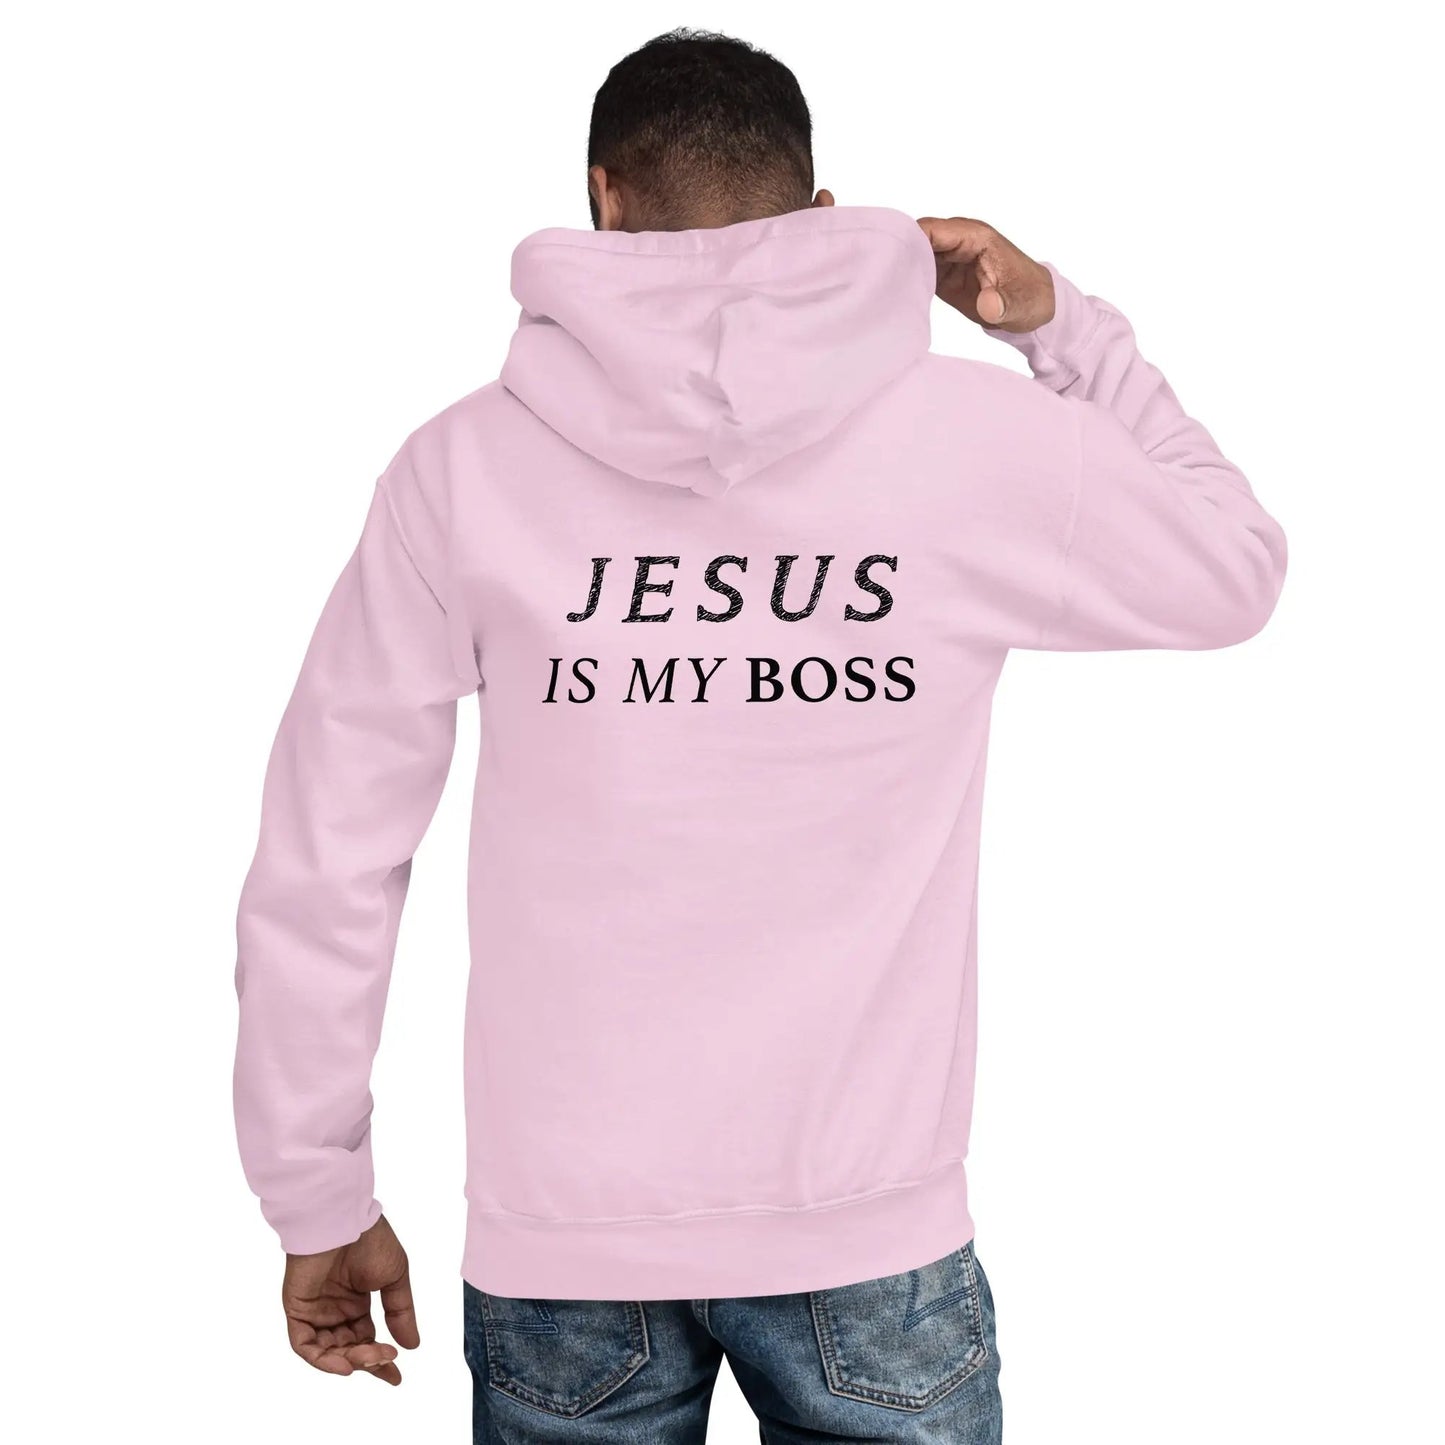 Hoodie mit dem Aufdruck "JESUS IS MY BOSS"